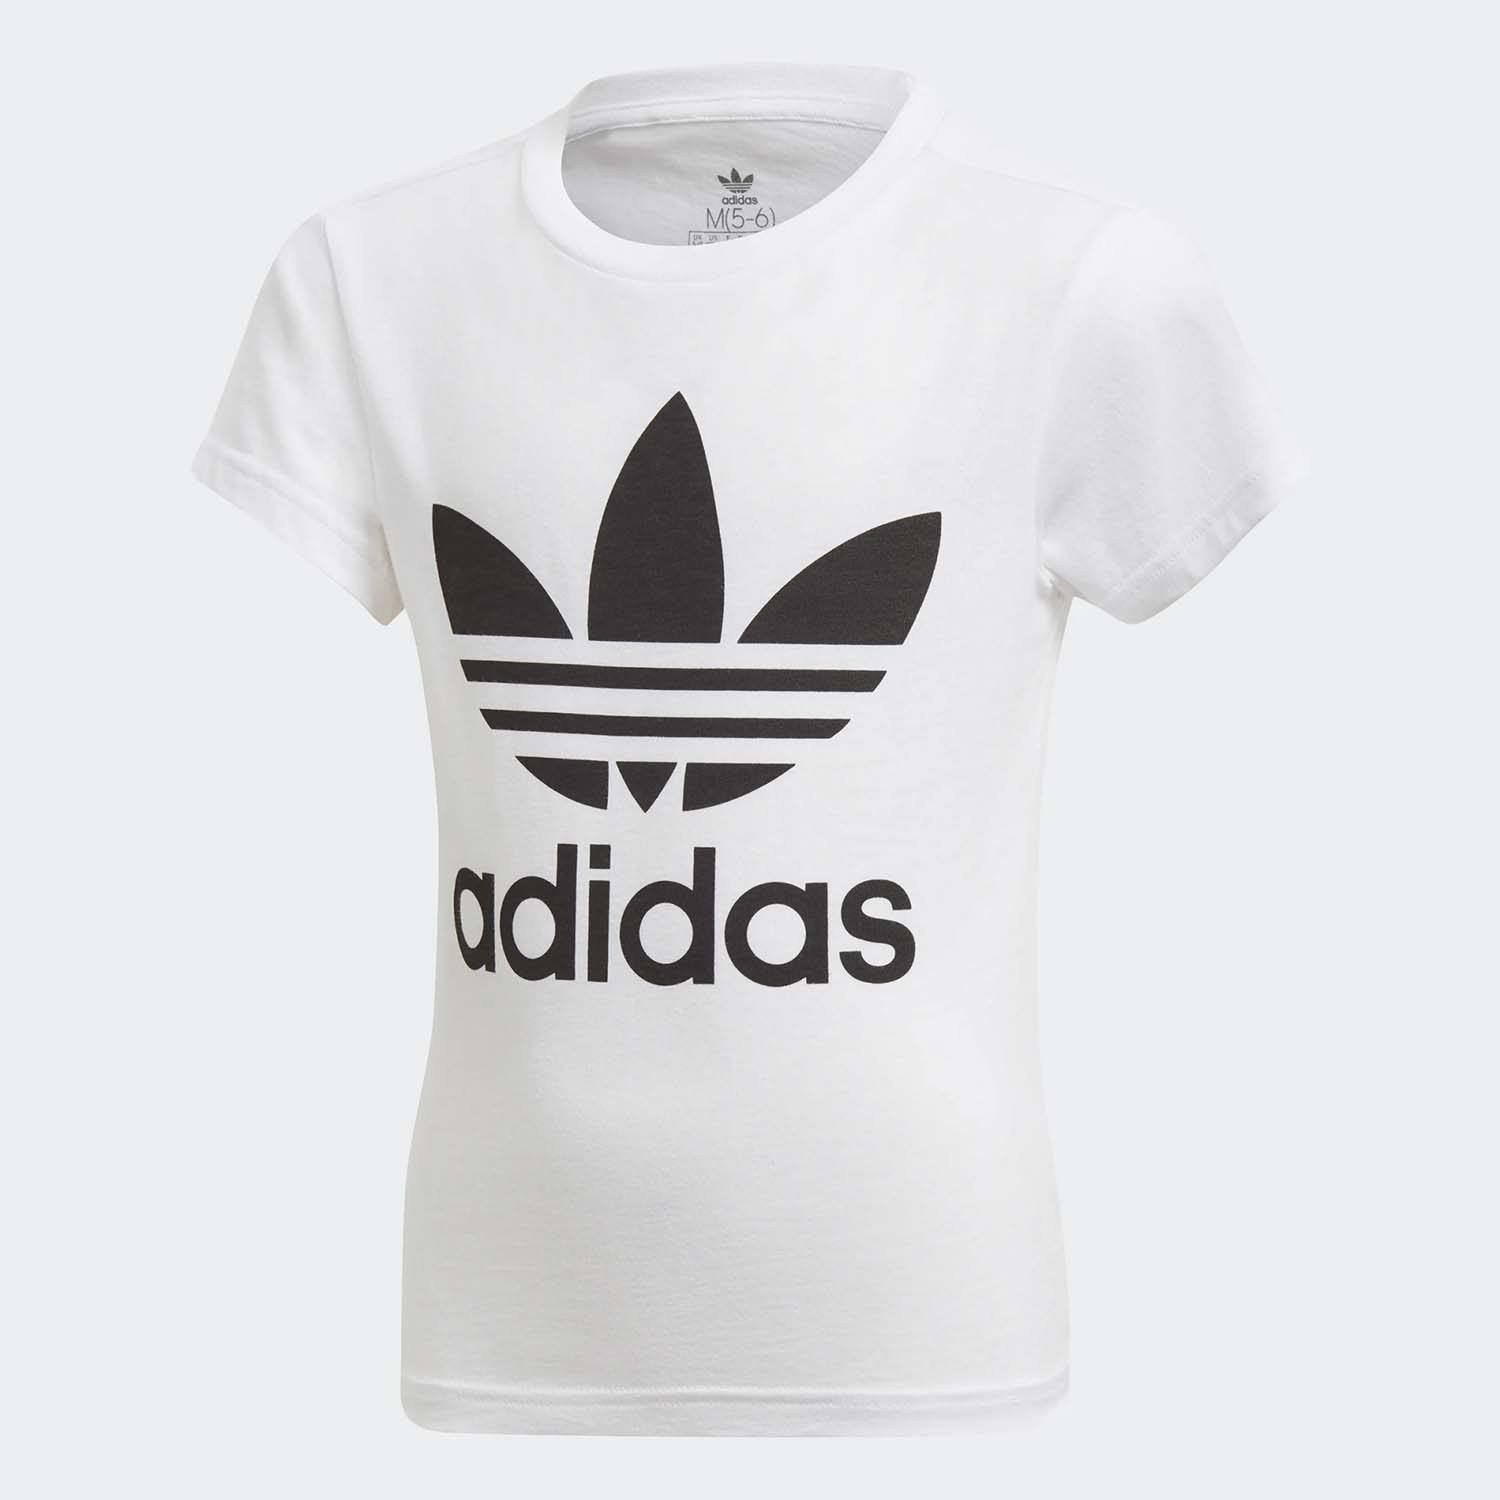 adidas Originals Trefoil Παιδικό T-Shirt (9000022671_1540)